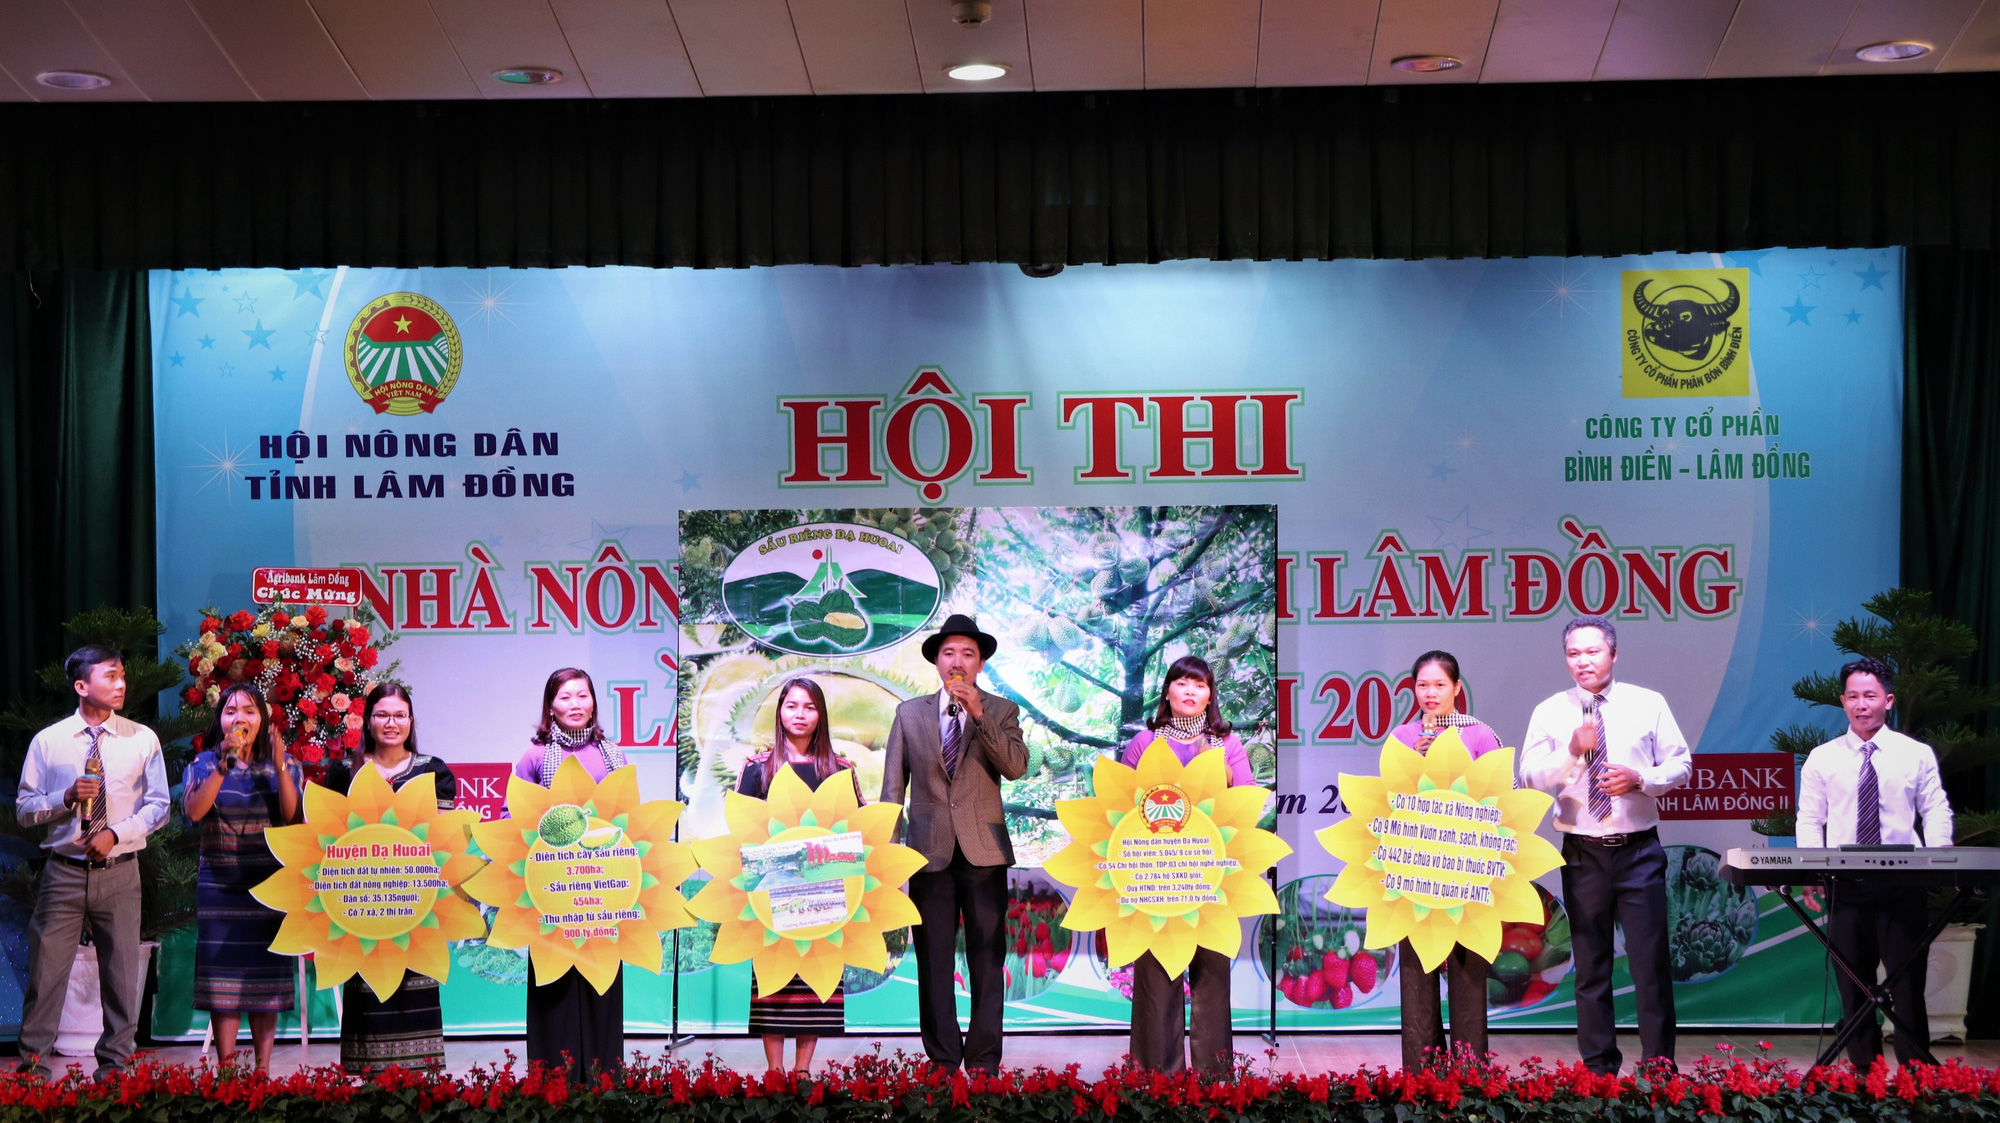 Lâm Đồng: Cảm xúc thăng hoa với Hội thi Nhà nông đua tài lần thứ VII - Ảnh 2.